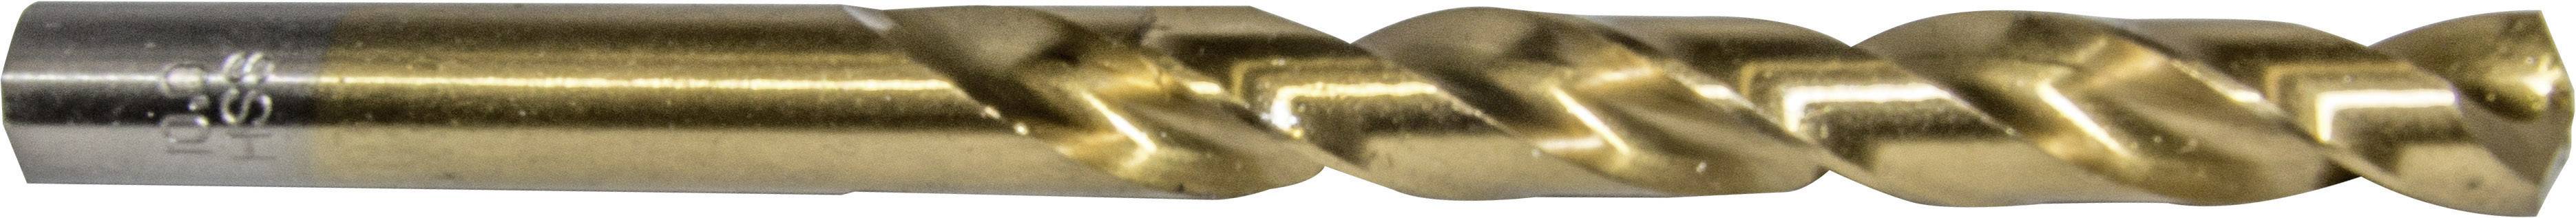 HELLER 29252 8 Metall-Spiralbohrer 1 Stück 1 mm Gesamtlänge 34 mm 1 St.